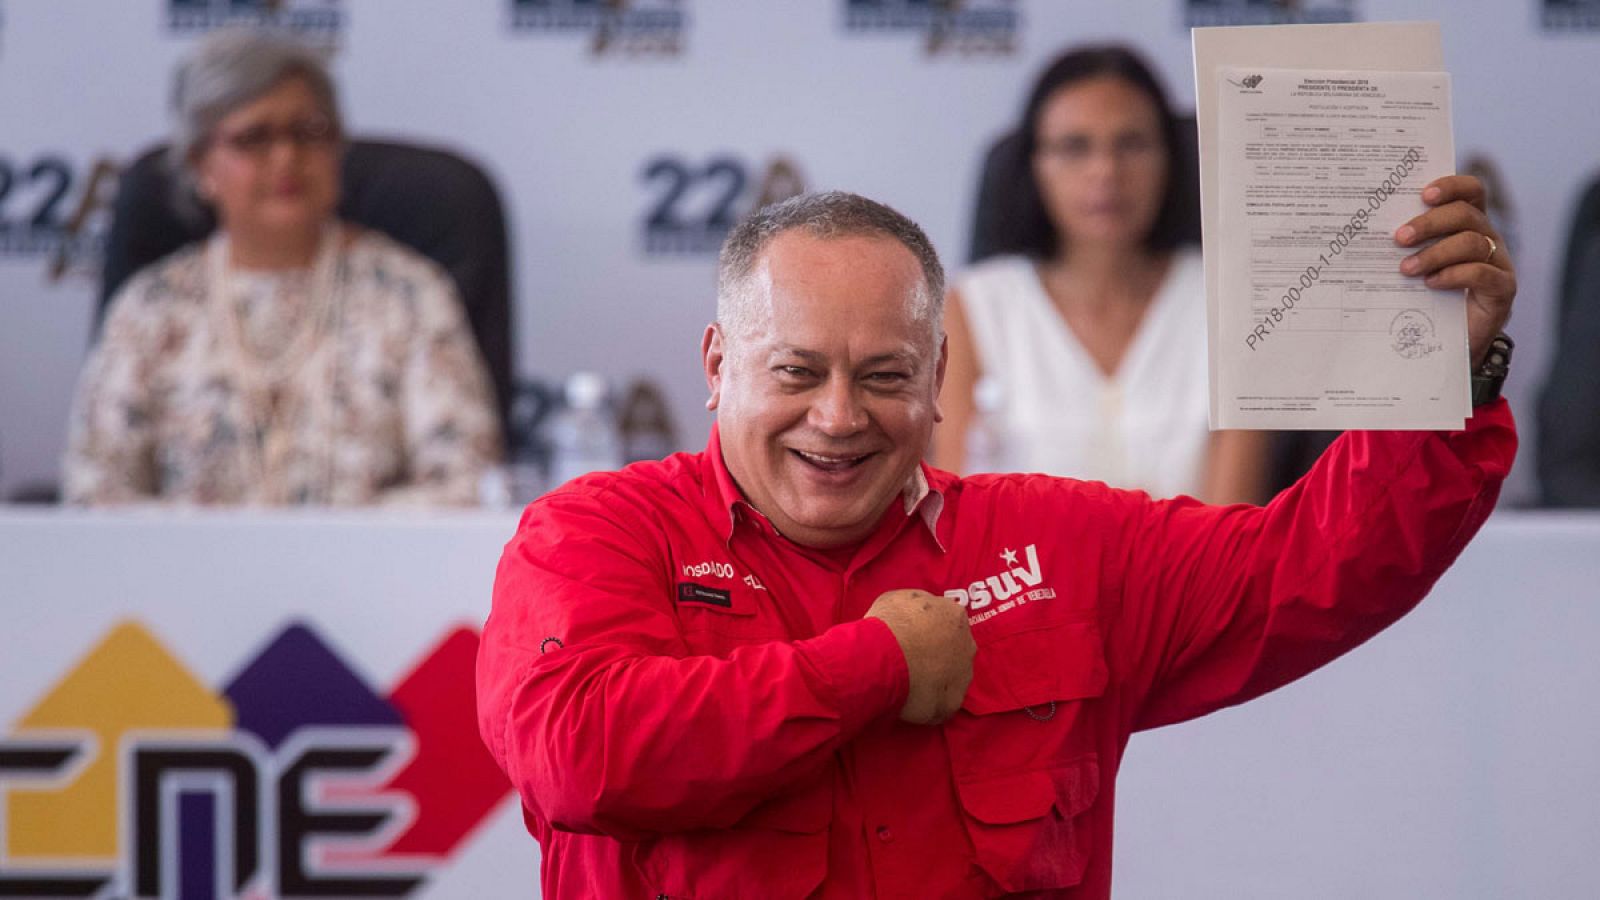 Fotografía de archivo fechada el 27 de febrero de 2018, que muestra al primer vicepresidente del Partido Socialista Unido de Venezuela (PSUV), Diosdado Cabello.